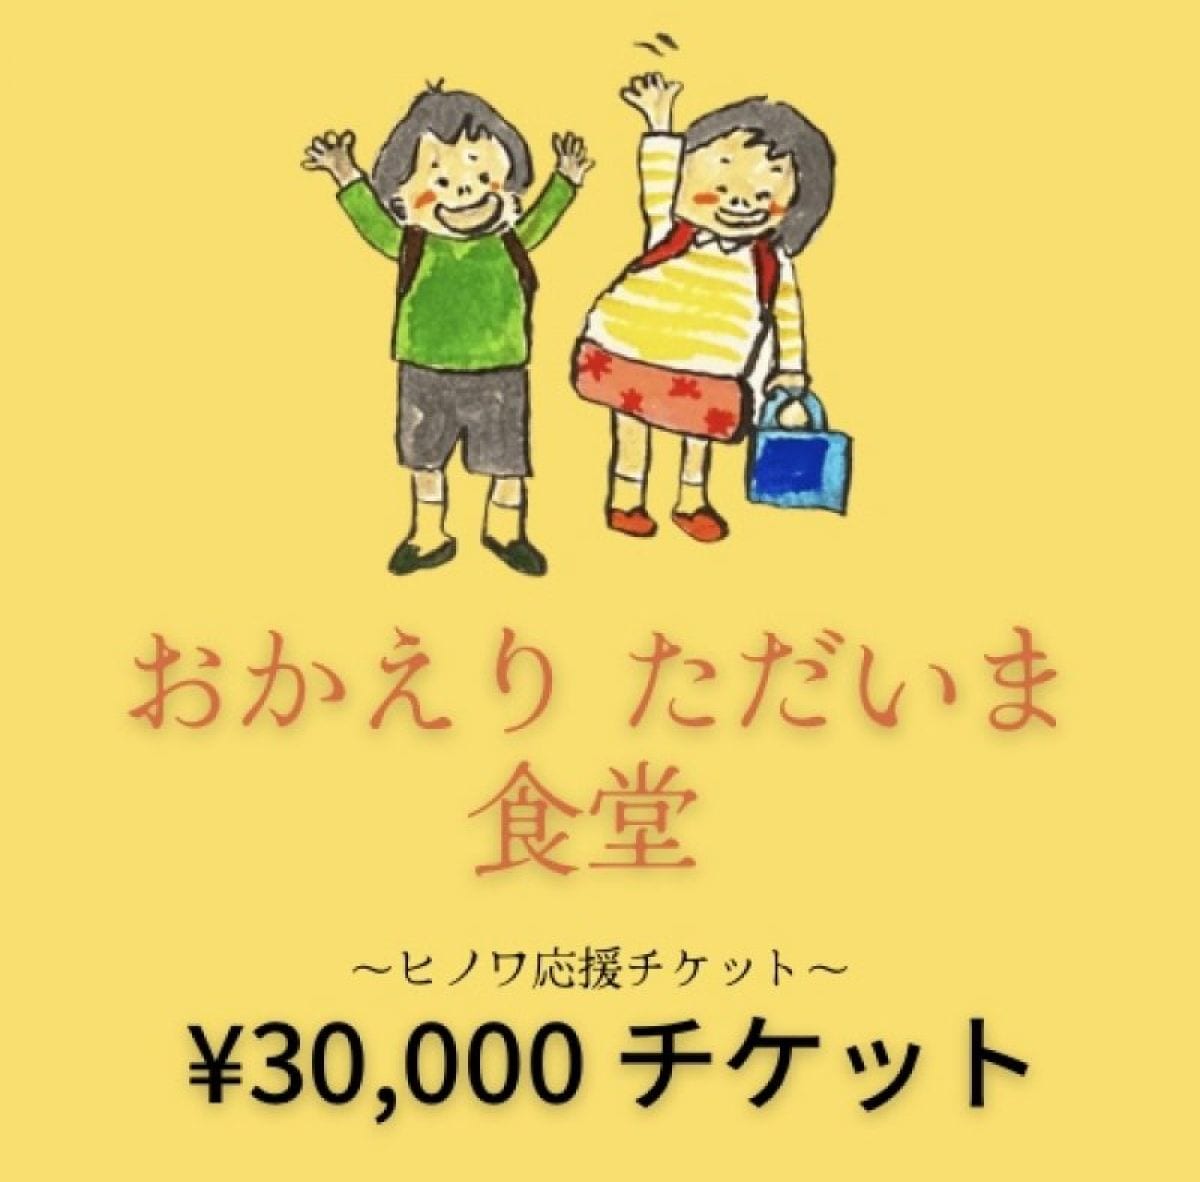 30,000円‼︎おかえりただいま食堂 応援チケット『ヒノワkitchen&space』